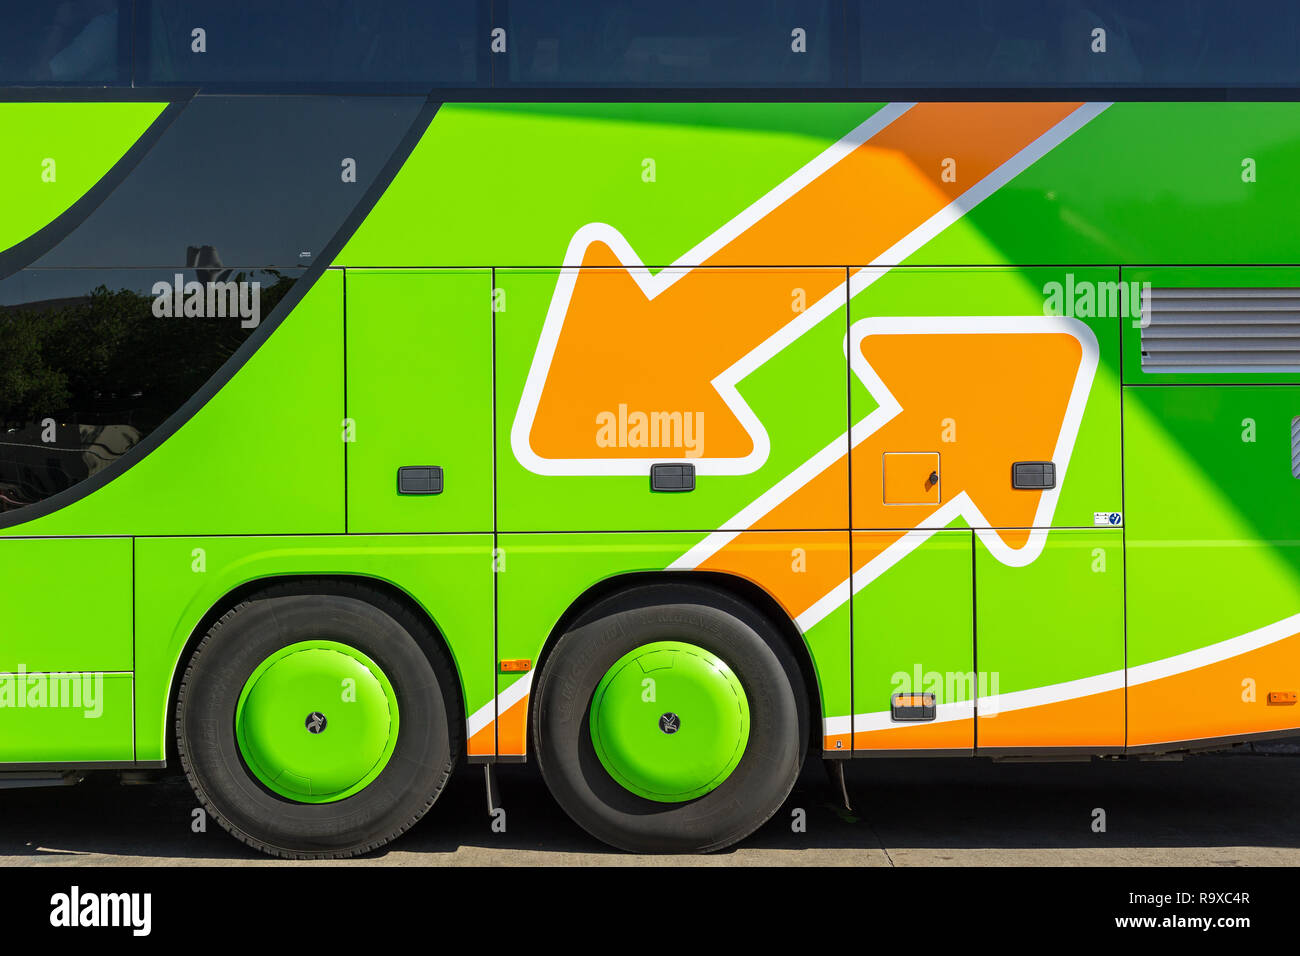 08.05.2018, Berlín, Alemania - El autobús des Fernbusunternehmens Flixbus am Zentralen Omnibusbahnhof Berlín. 0MC180508D417CARO [modelo de liberación: No aplic Foto de stock